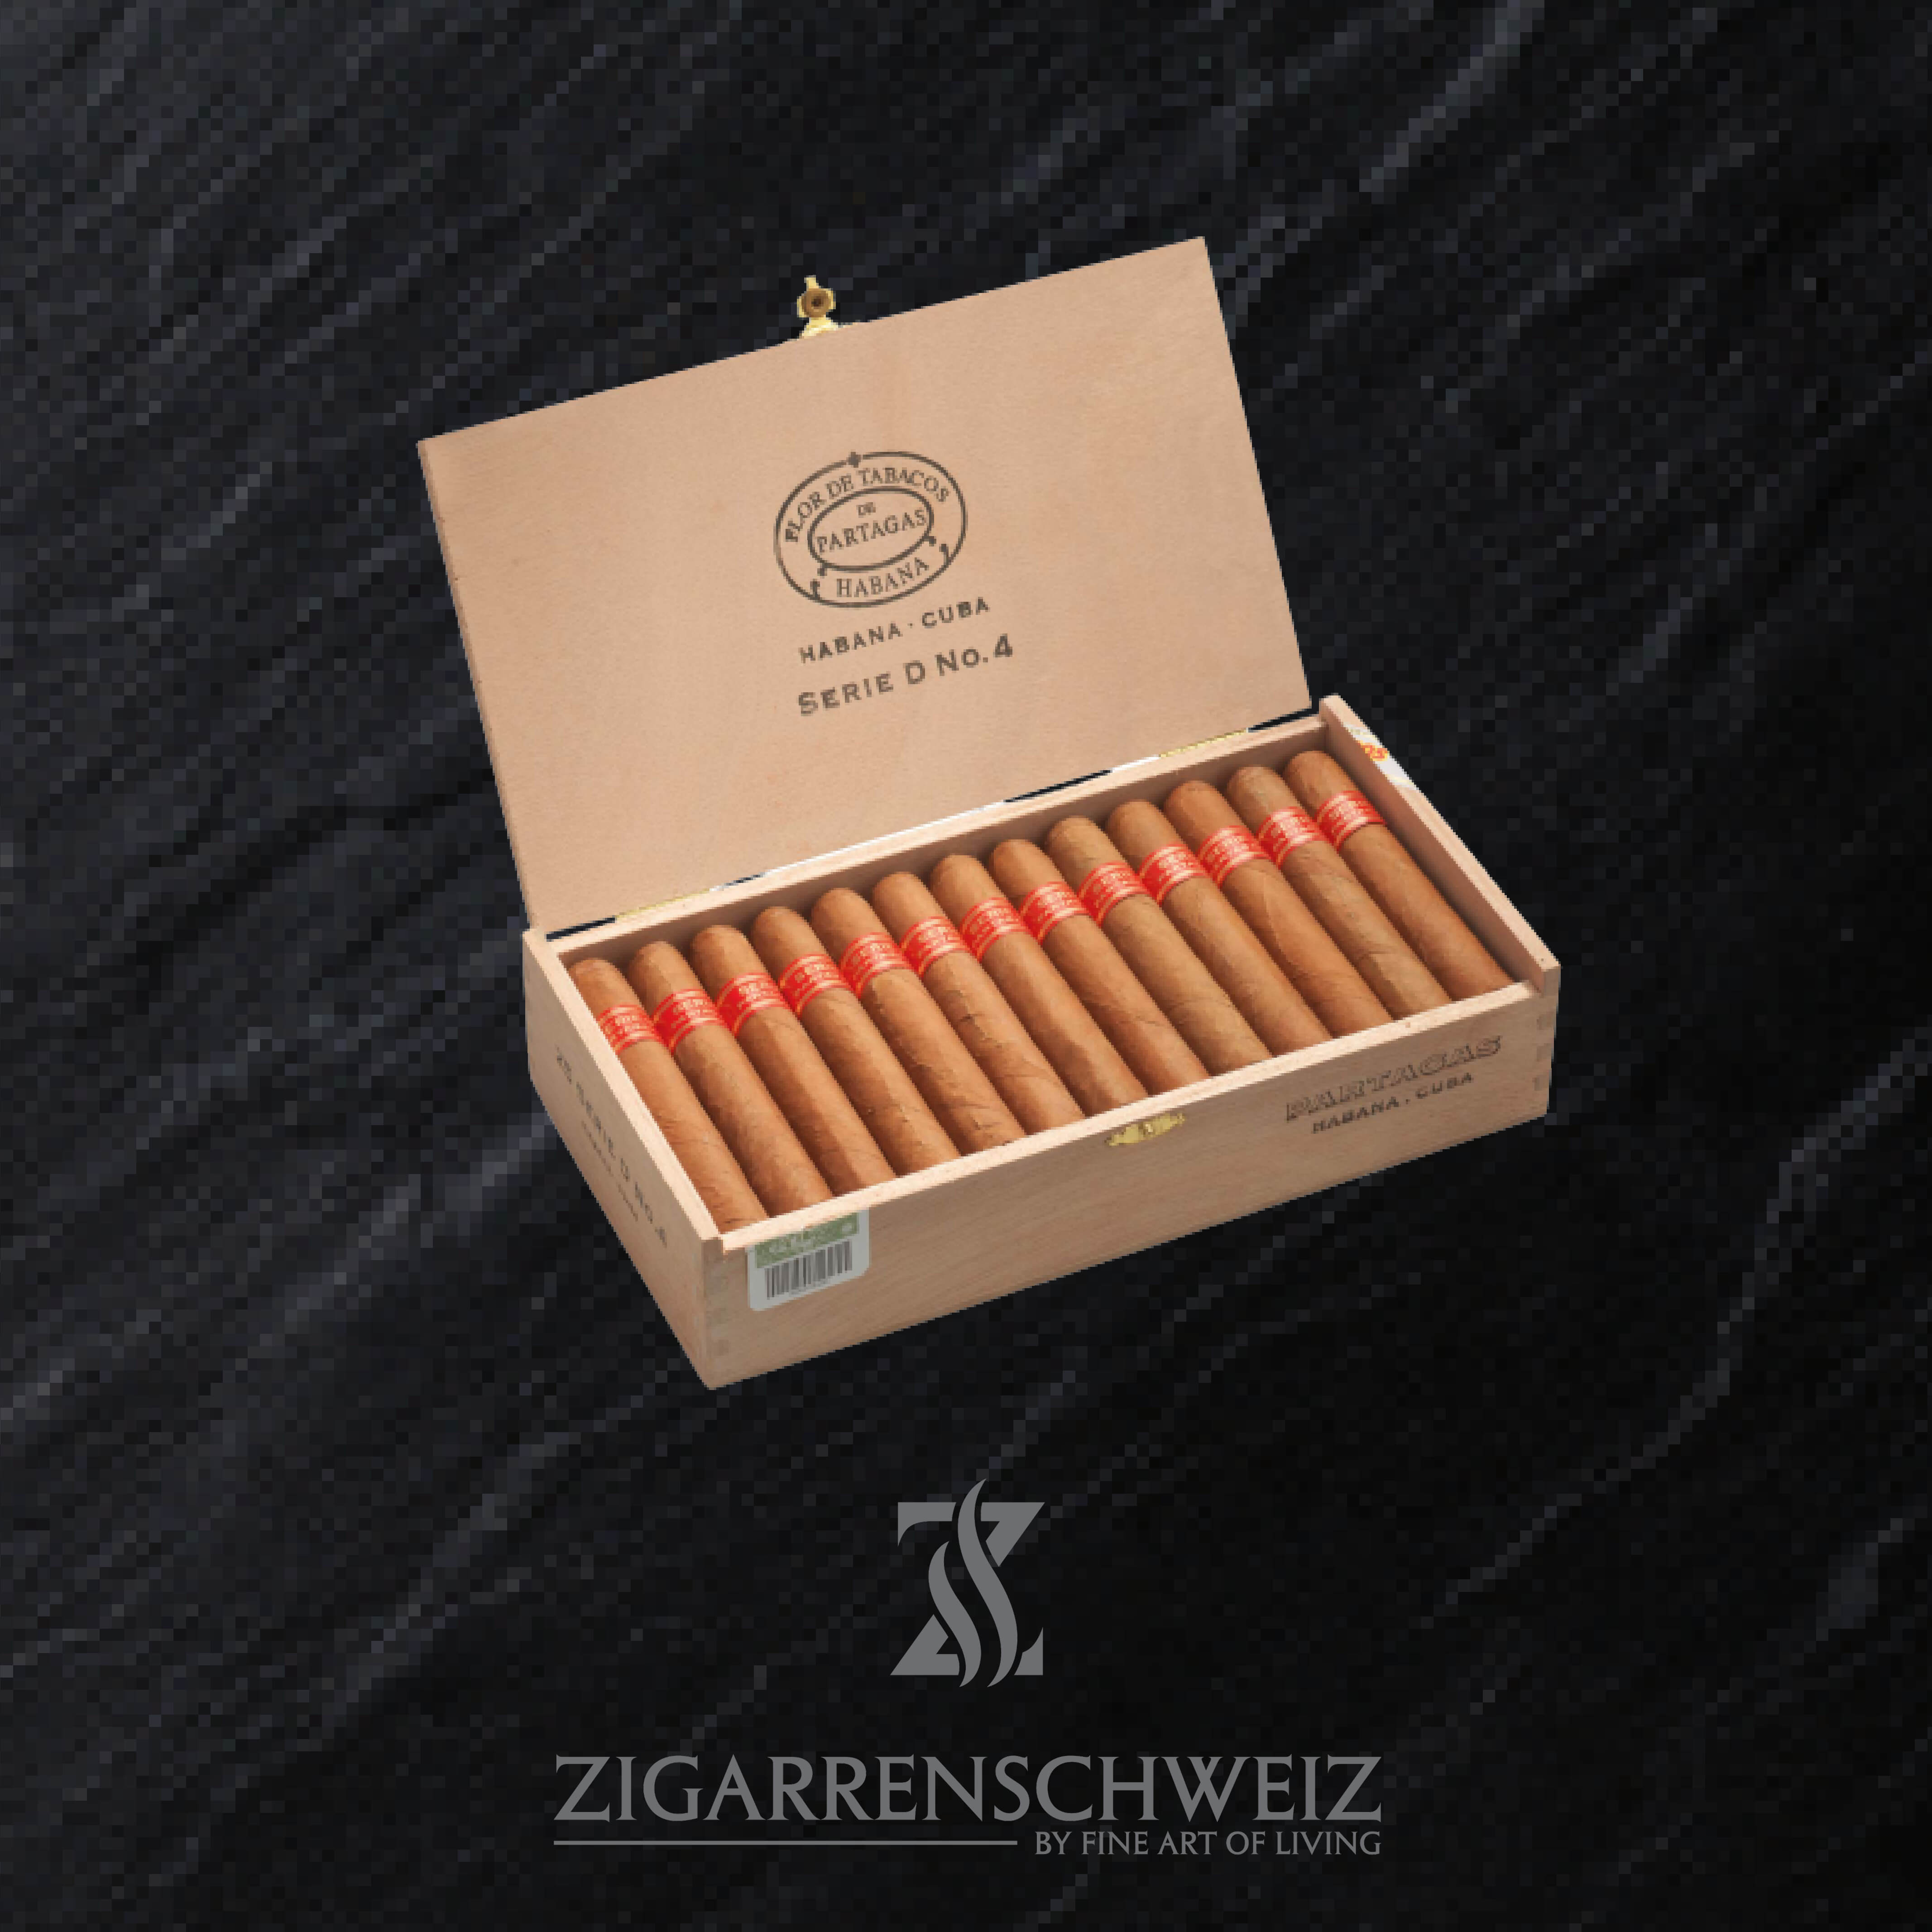 25er Kiste Partagas Serie D No. 4 Zigarren offen